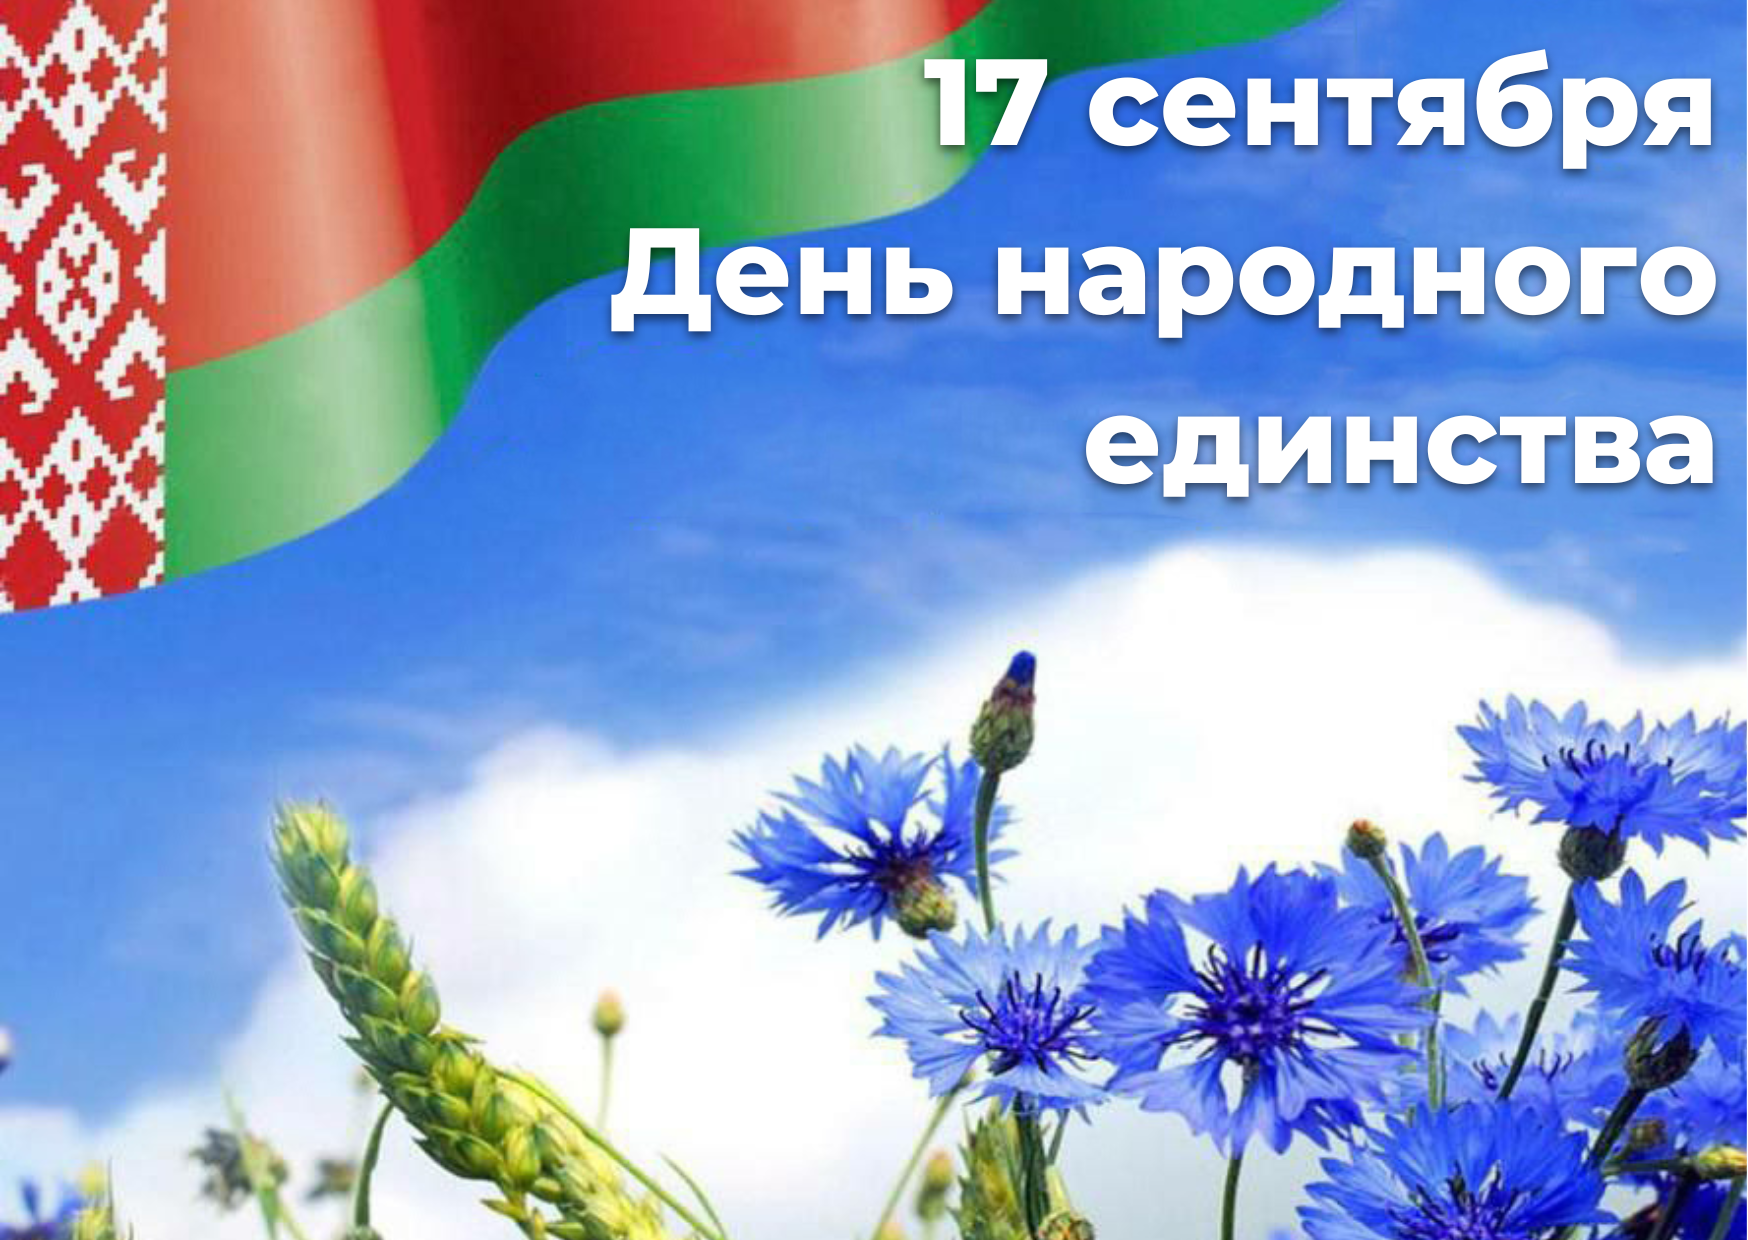 Программа праздничных мероприятий ко Дню народного единства в Витебске 17 сентября